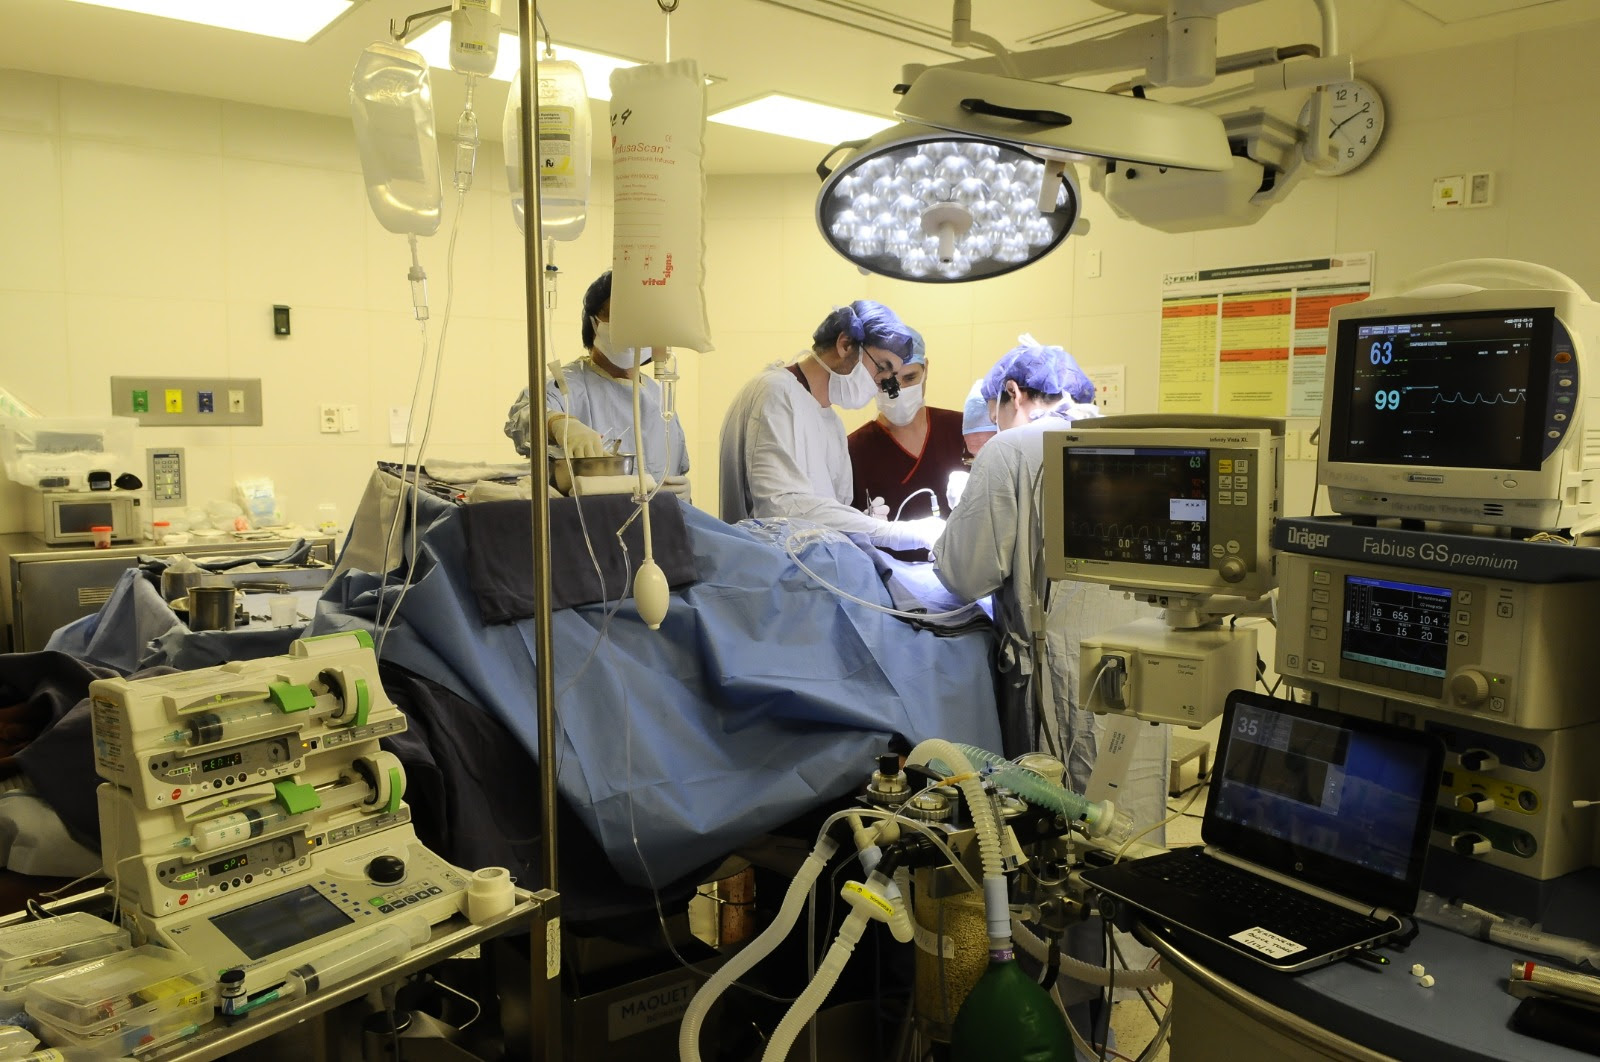 SAQ se prepara para retomar las coordinaciones quirúrgicas y procedimientos invasivos